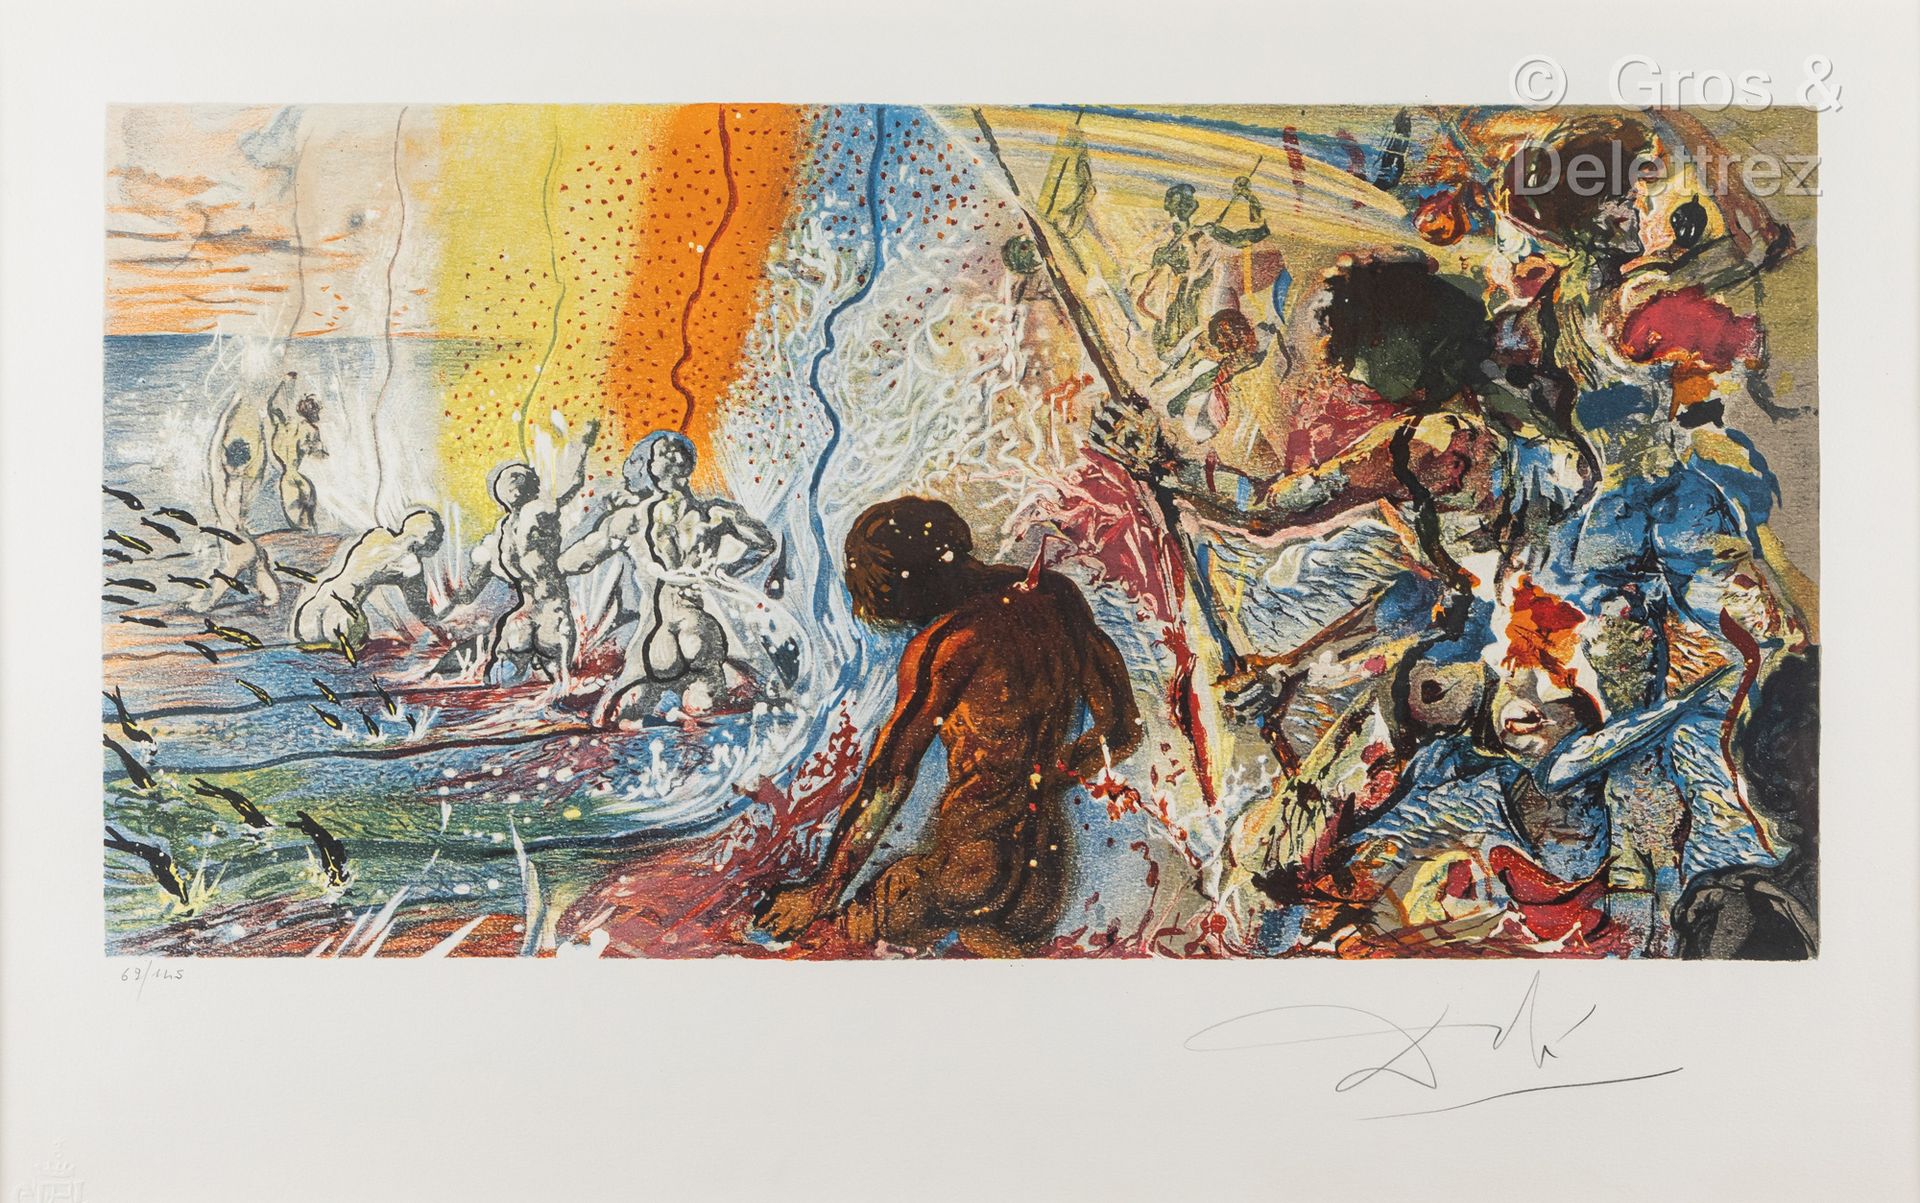 Salvador DALI [ESPAGNE] (1904-1989) La Pêche au thon, 1971-1972
Lithographie sur&hellip;